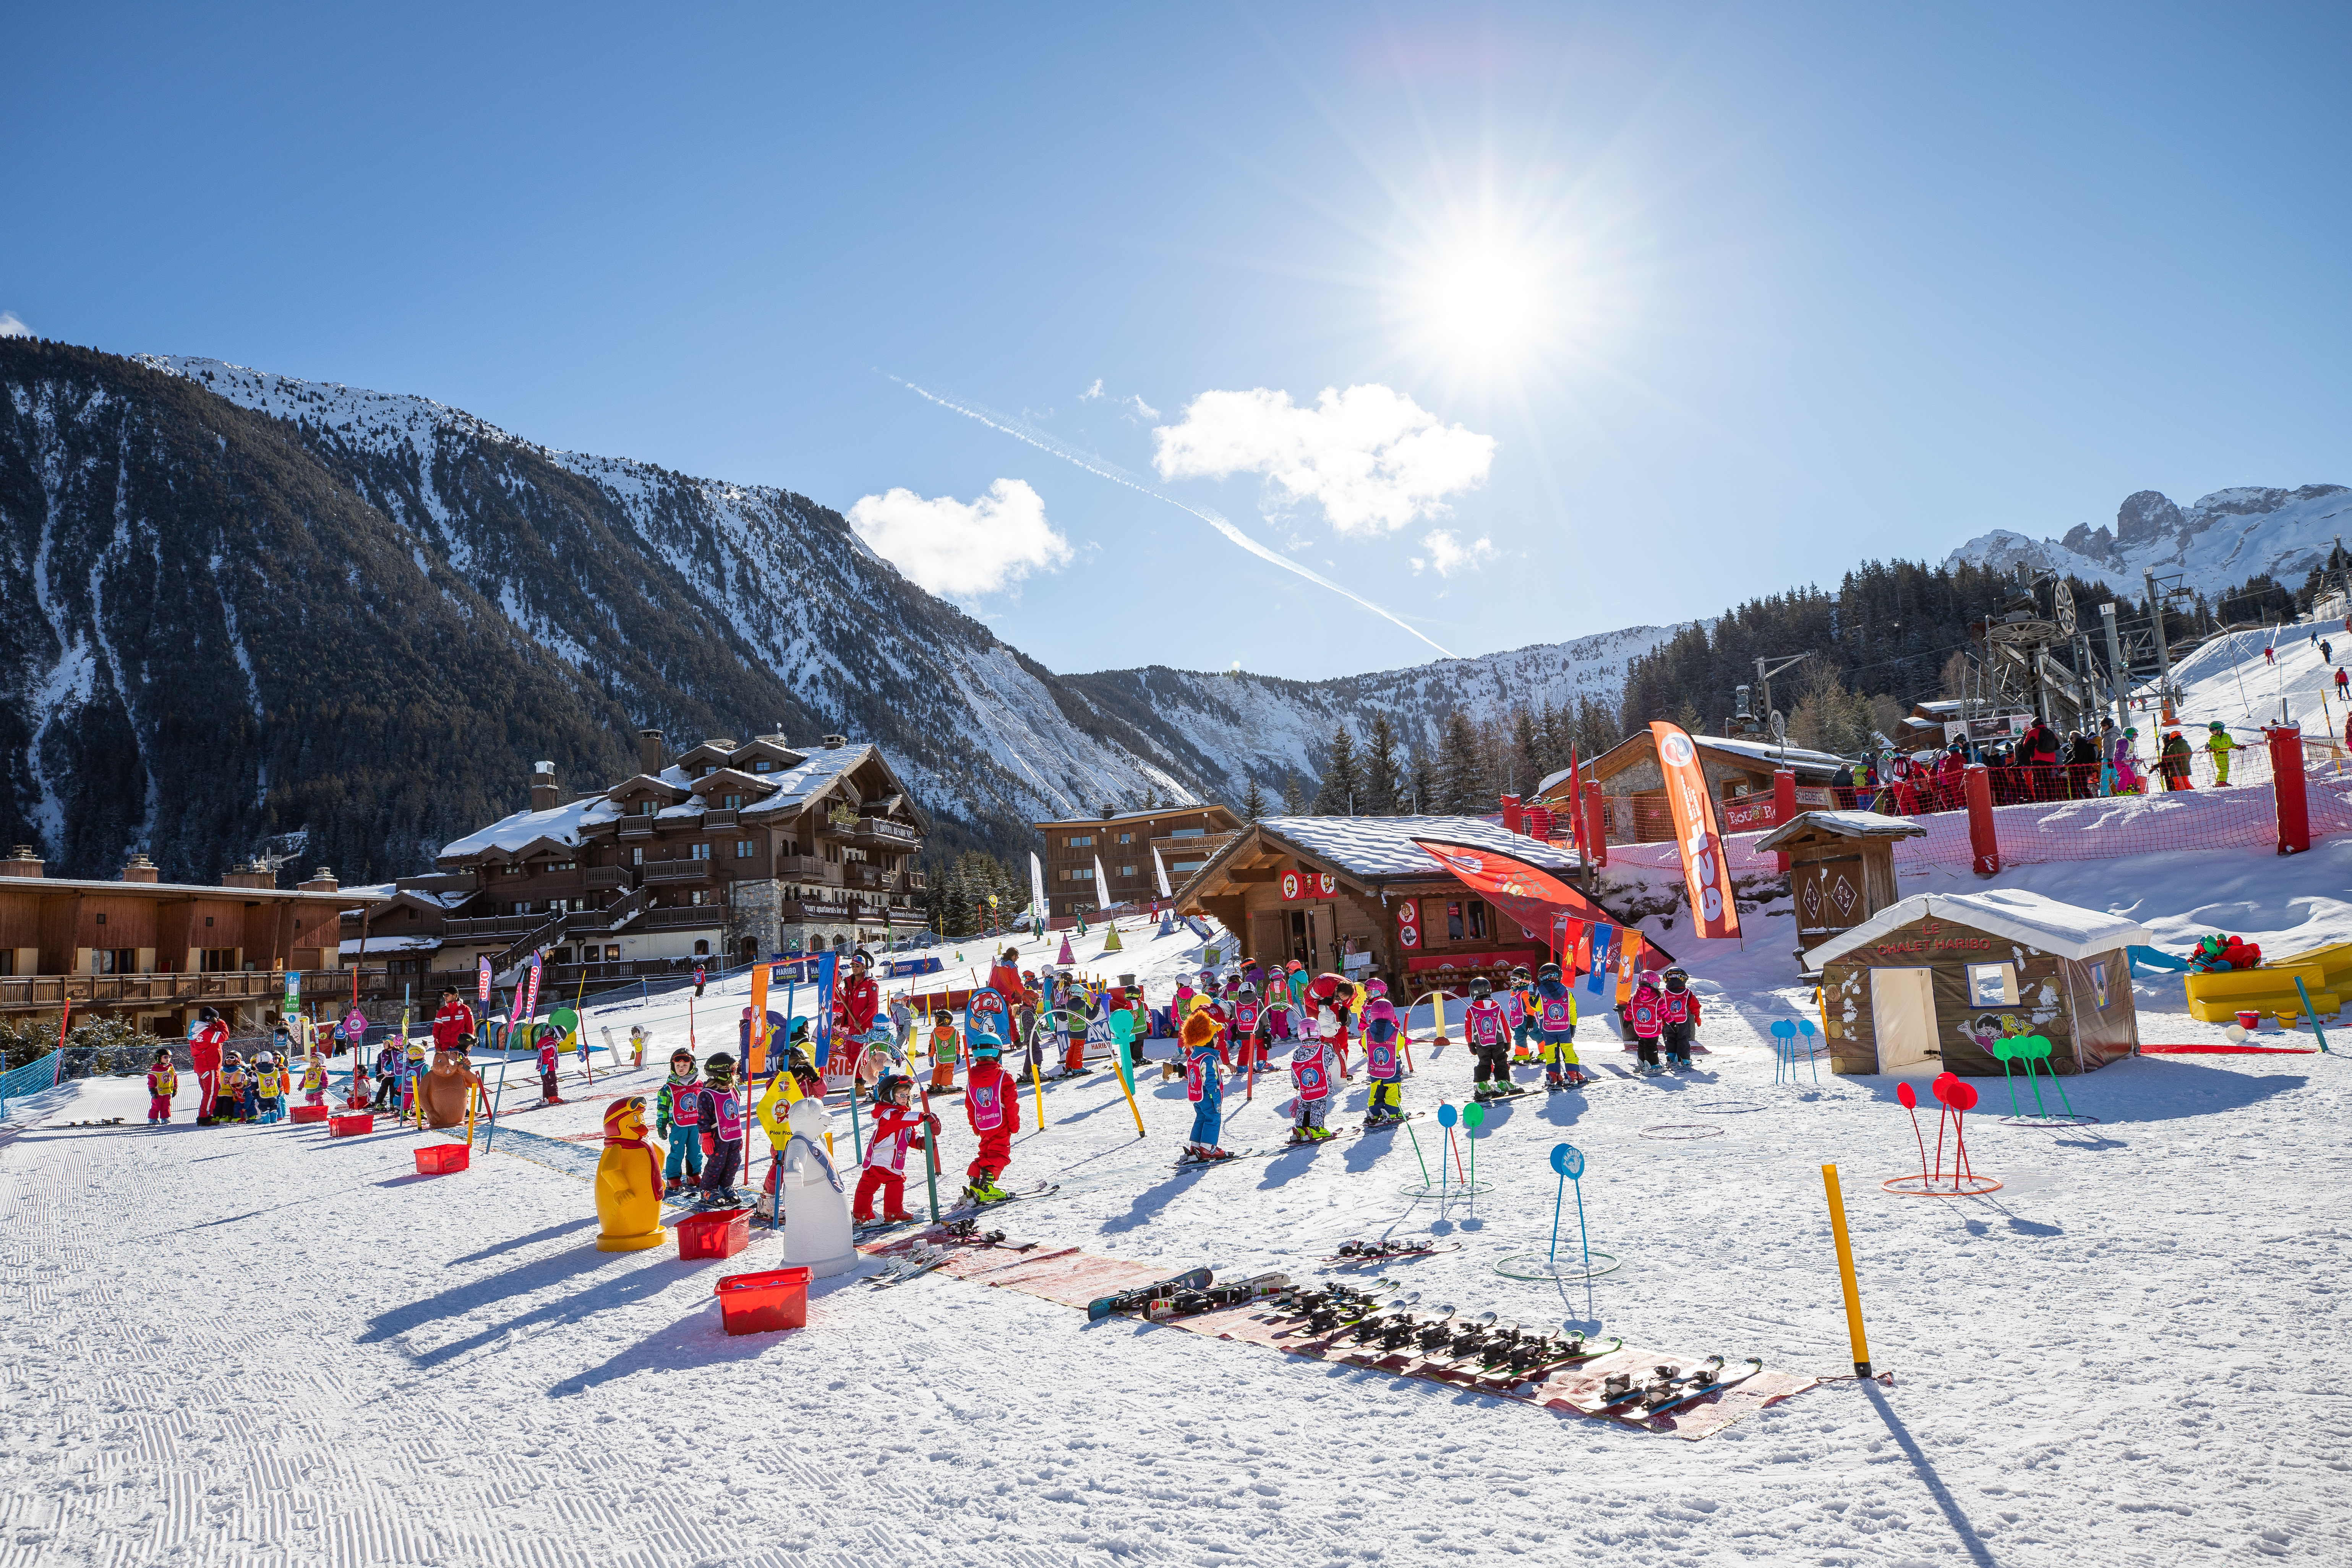 École de ski pour les enfants avec le Manali Lodge en fond